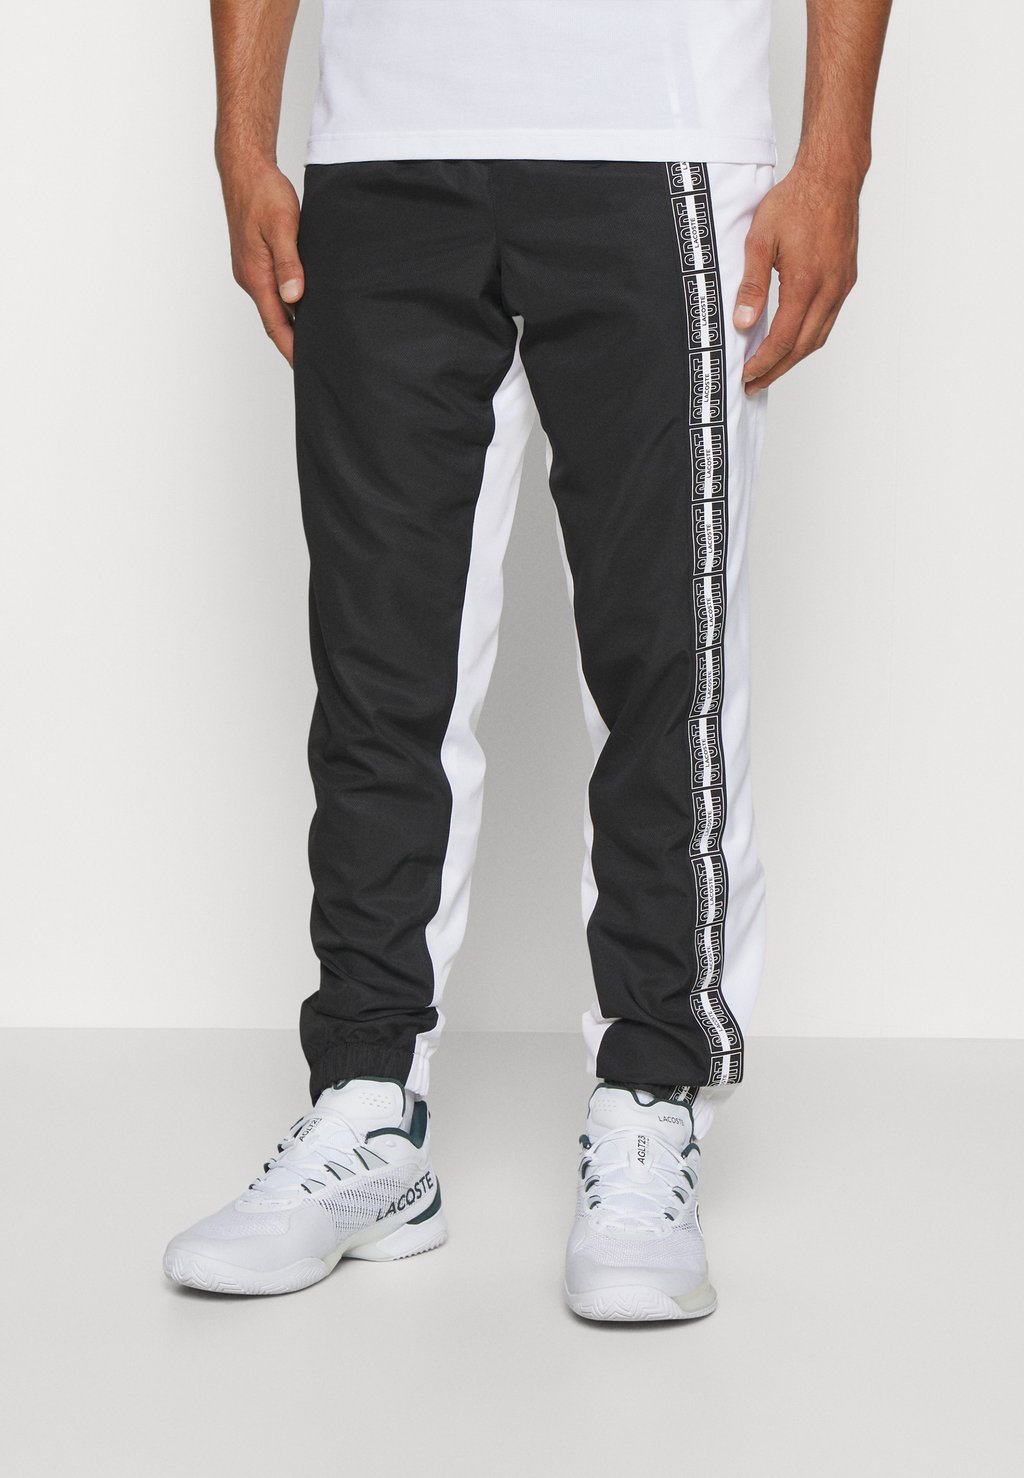 Спортивные брюки Tennis Pant Lacoste, цвет noir/blanc